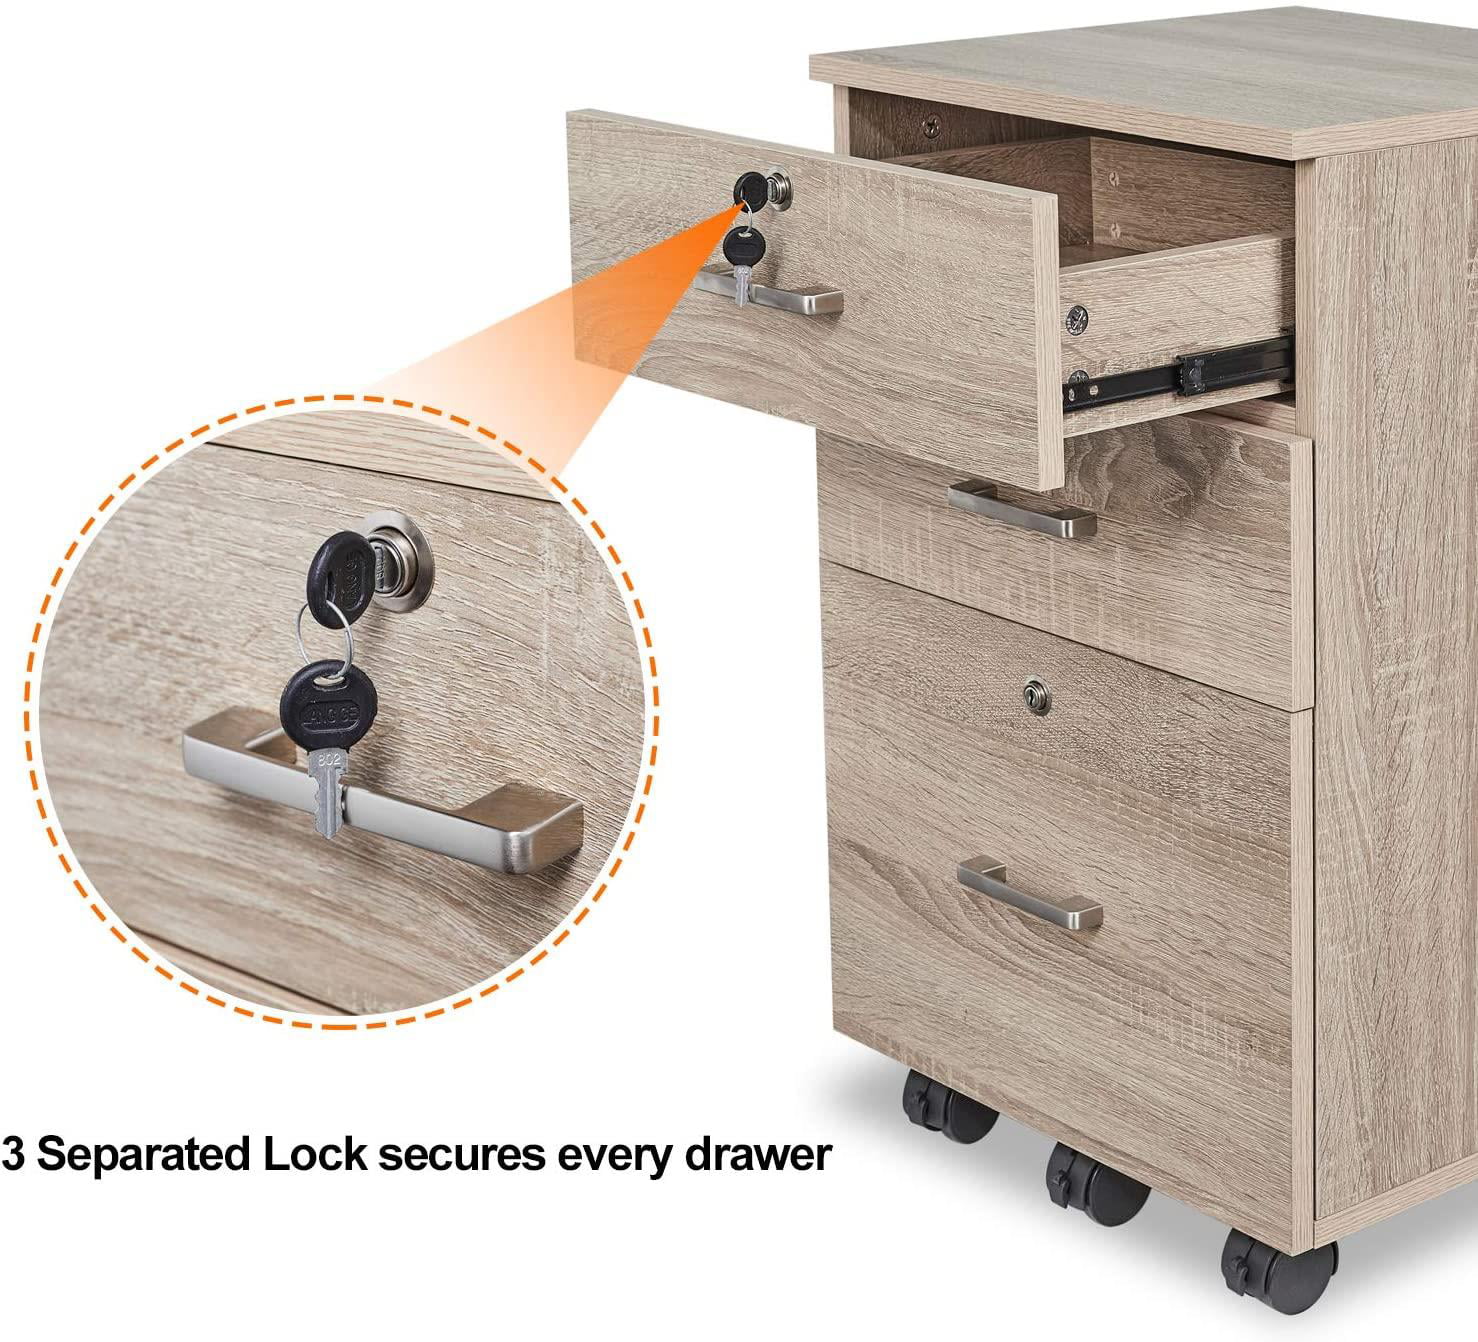 Portable Oak File Cabinet with Lock - Ktaxon